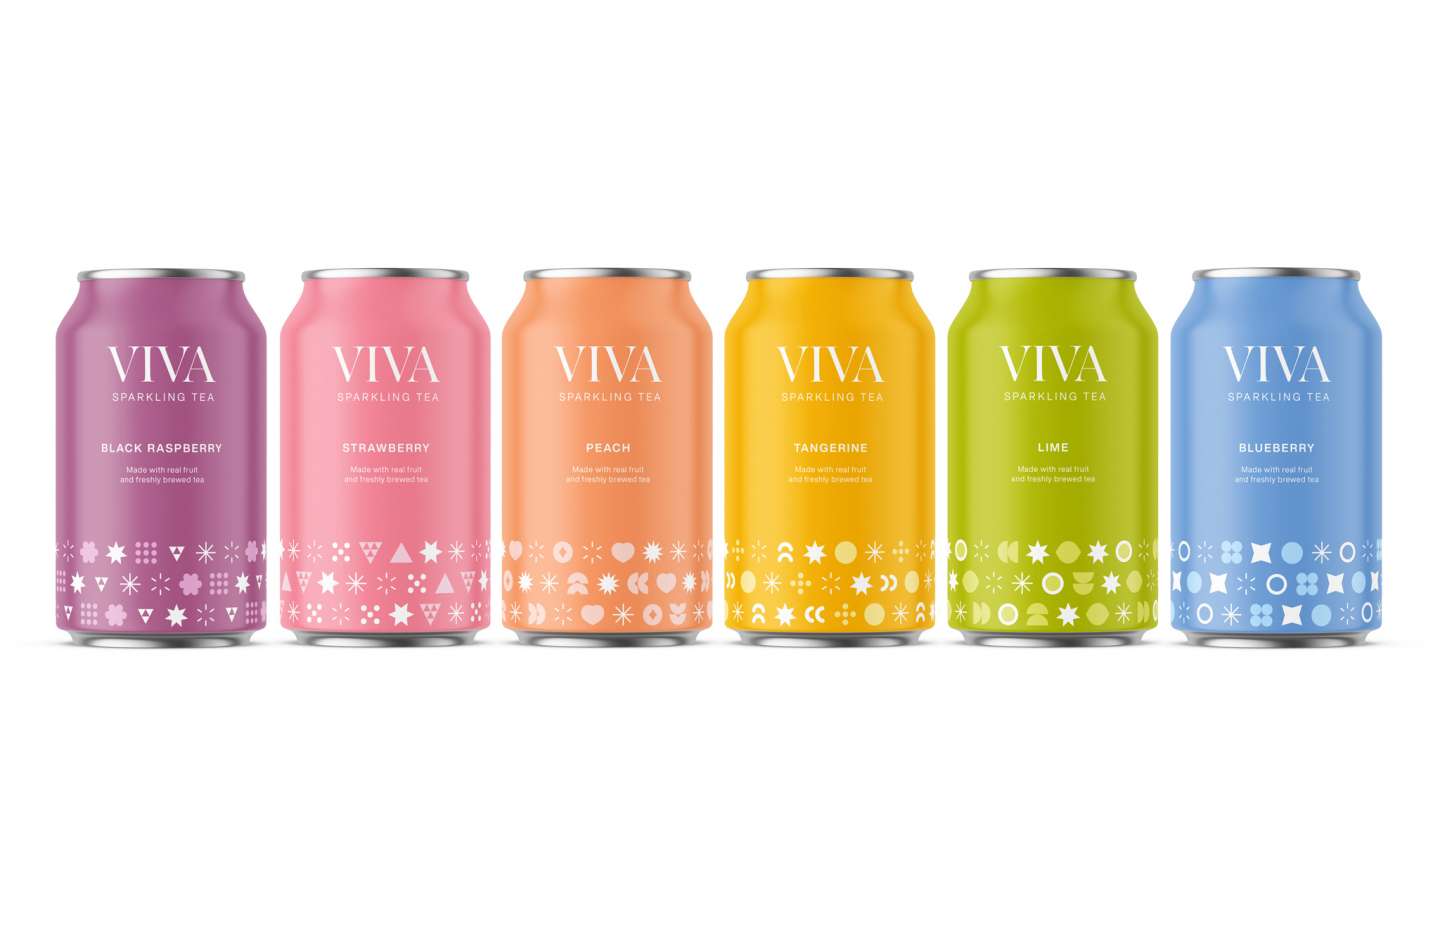 Viva Sparkling Tea